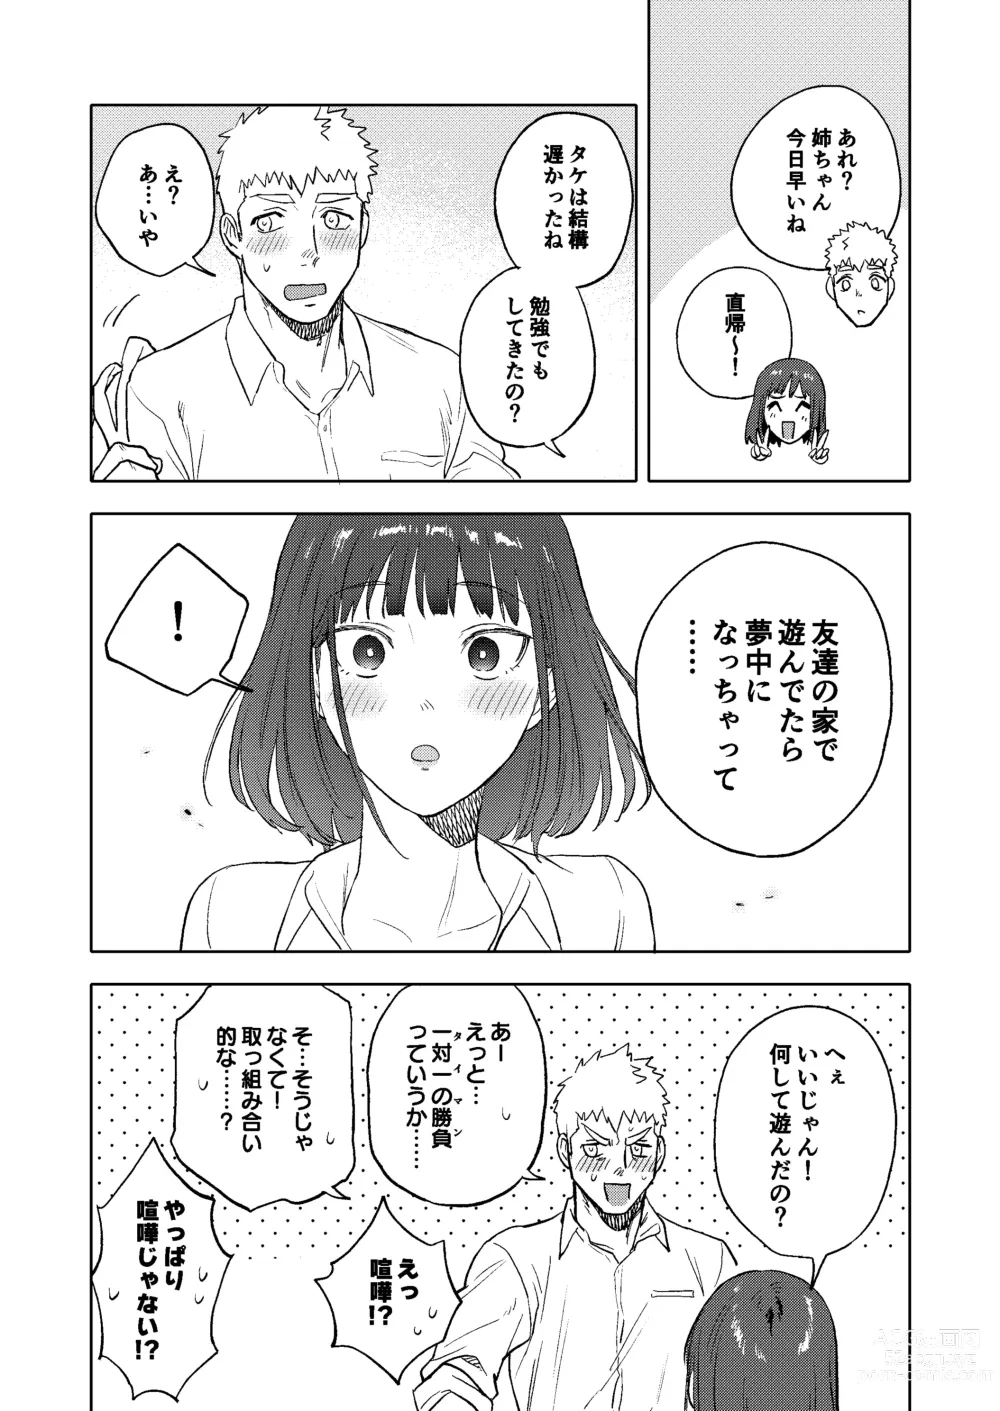 Page 50 of doujinshi Dainarishounari 2